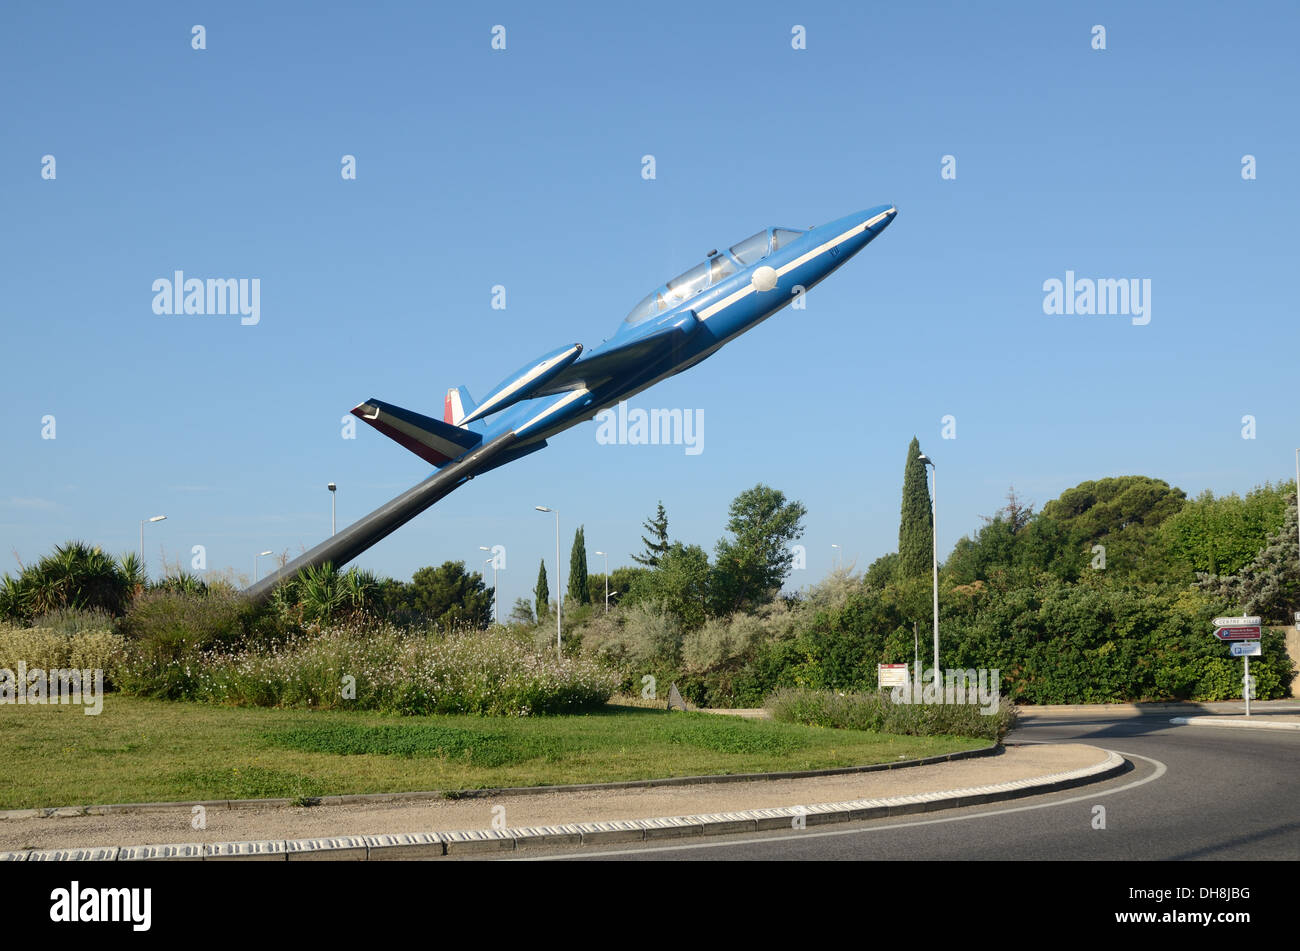 Avion, avion ou avion monté sur Le Rond-Point de trafic dans salon-de-Provence France Banque D'Images